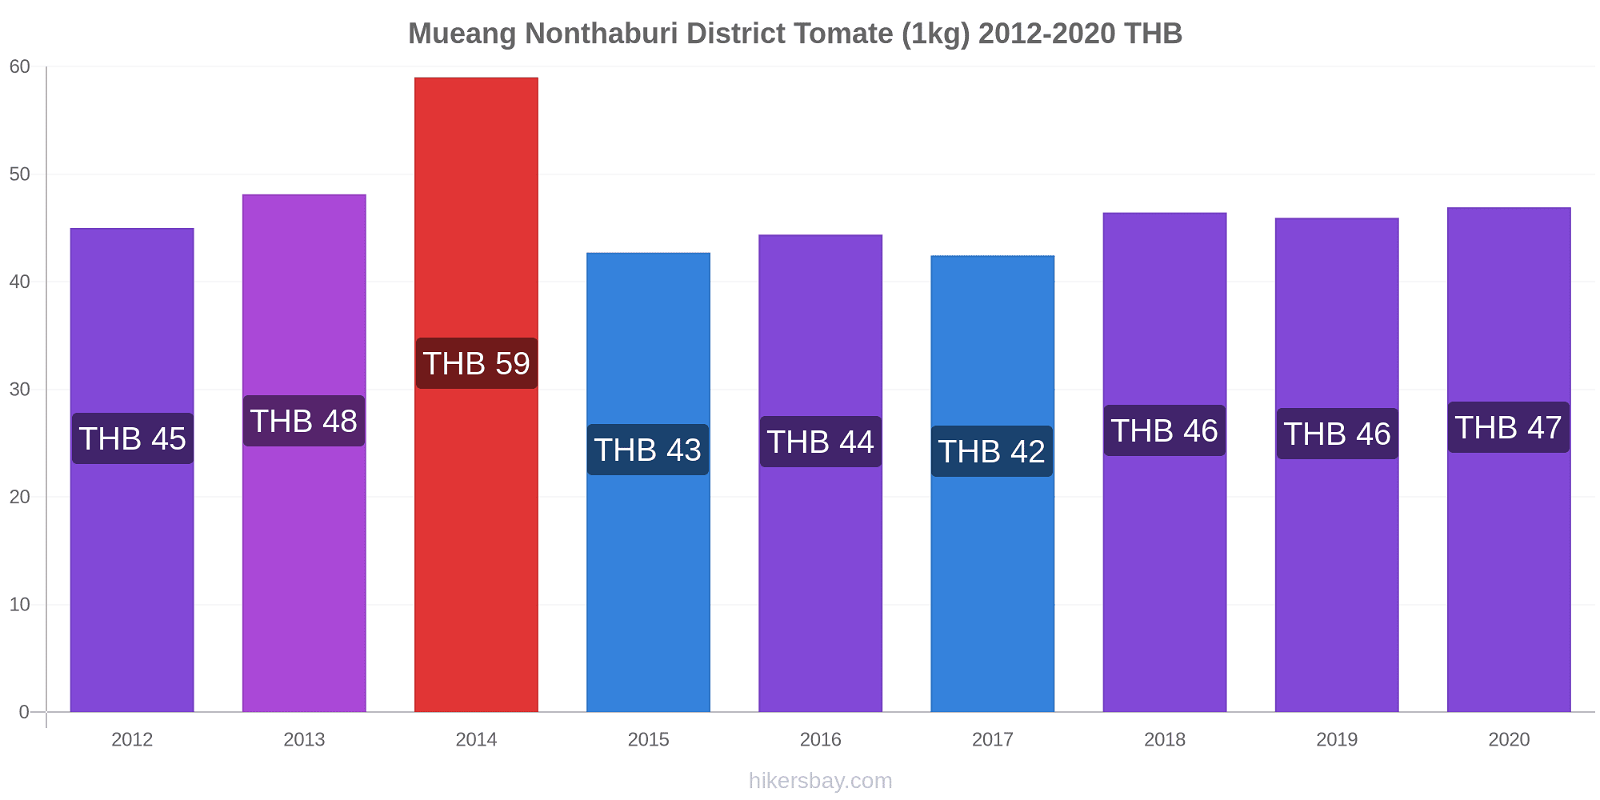 Mueang Nonthaburi District cambios de precios Tomate (1kg) hikersbay.com